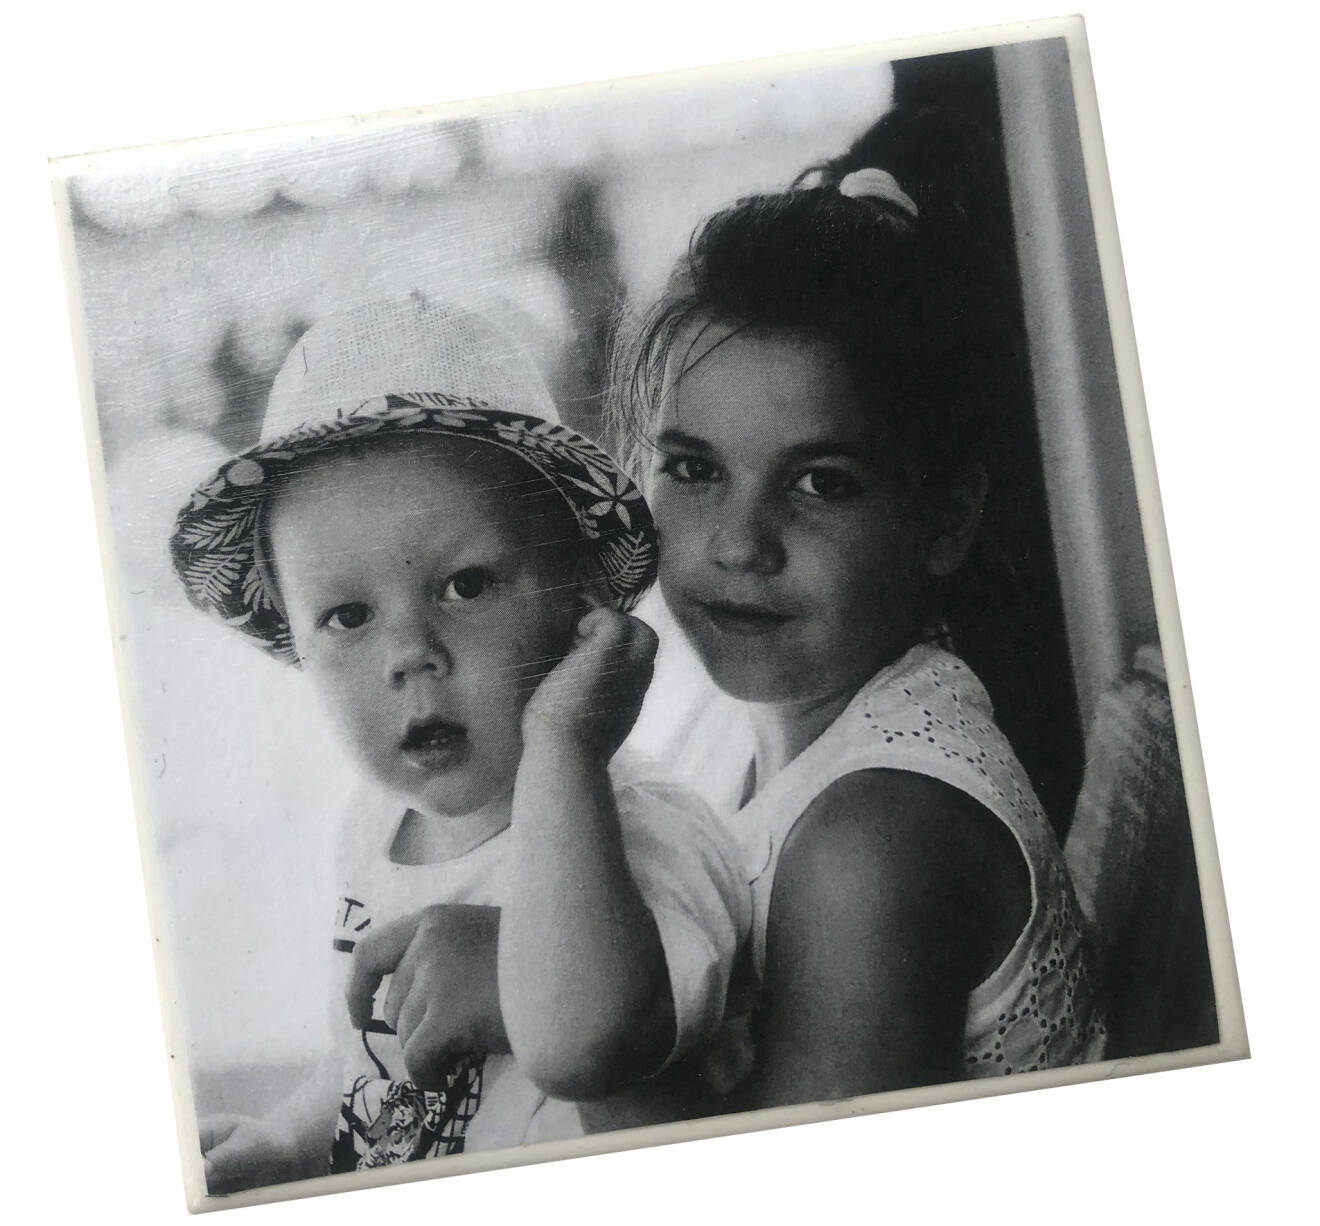 Coaster i keramik med bild av två barn, svartvit bild